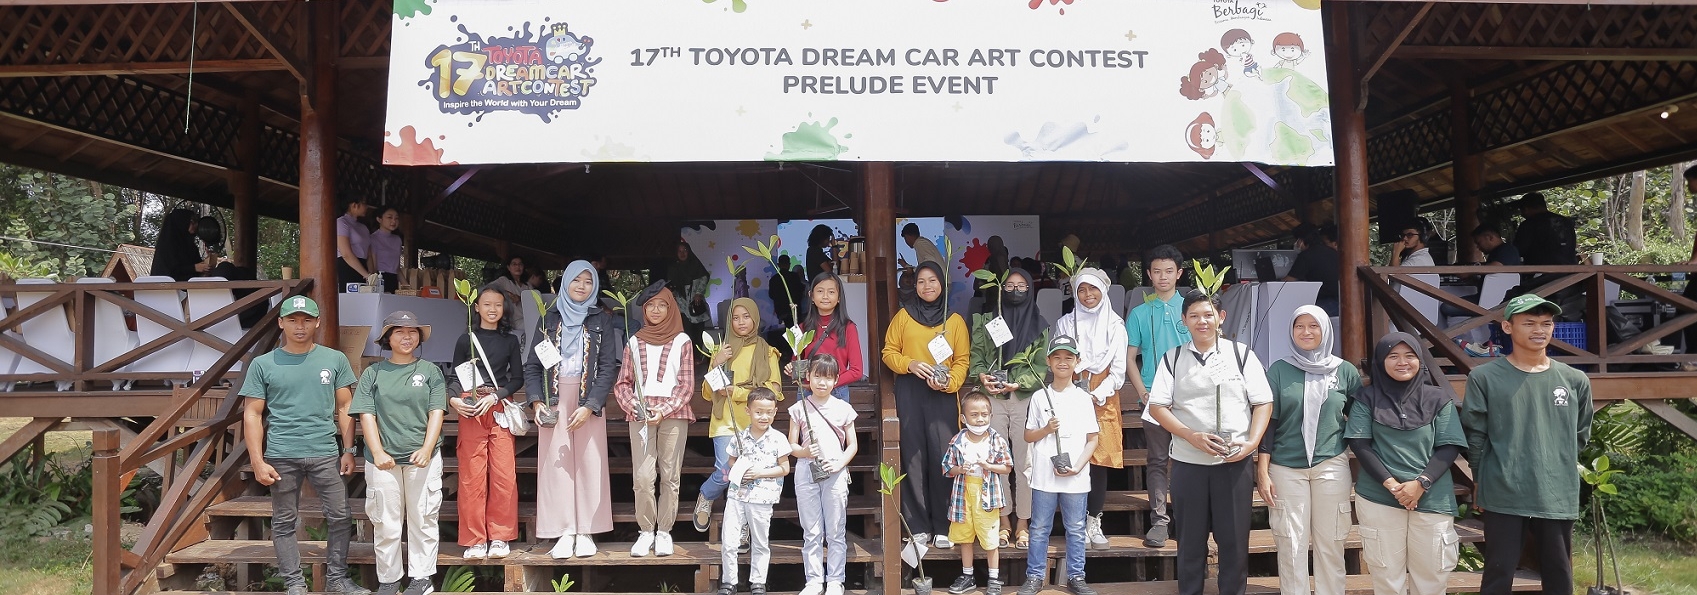 Karya Desain Future Mobility Dua Anak Indonesia Berhasil Menjadi the Best Finalist di Global Toyota Dream Car Art Contest ke-16 Sejalan dengan Visi Mobility Happiness for All, Ajang Tahunan Toyota Dream Car Art Contest ke-17 Kembali Dibuka 